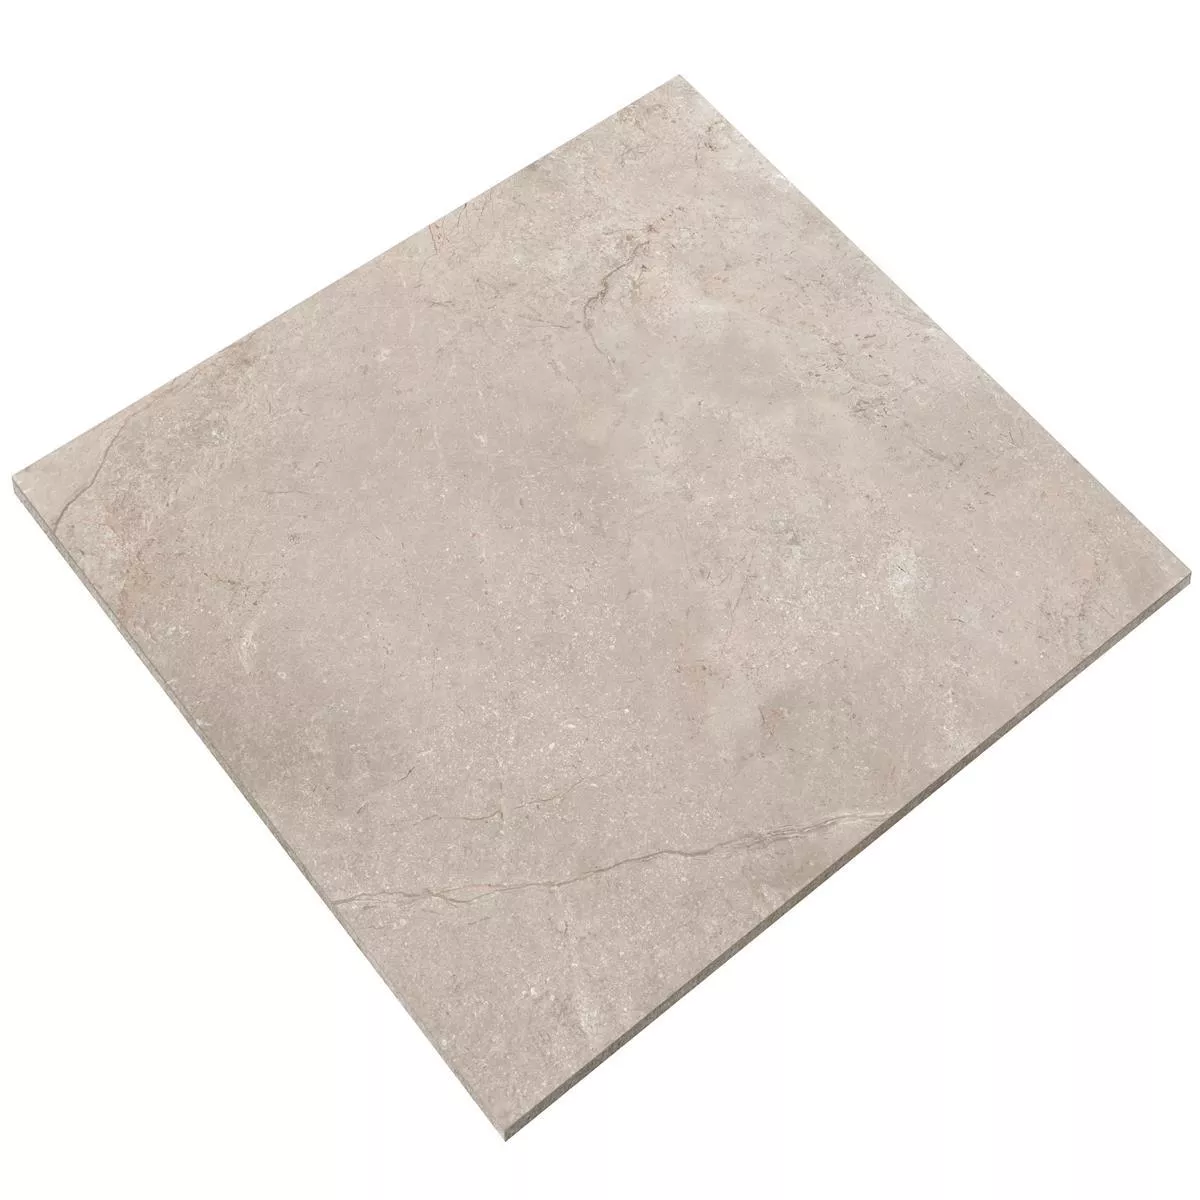 Sample Floor Tiles Pangea Marble Optic Mat Beige 60x60cm